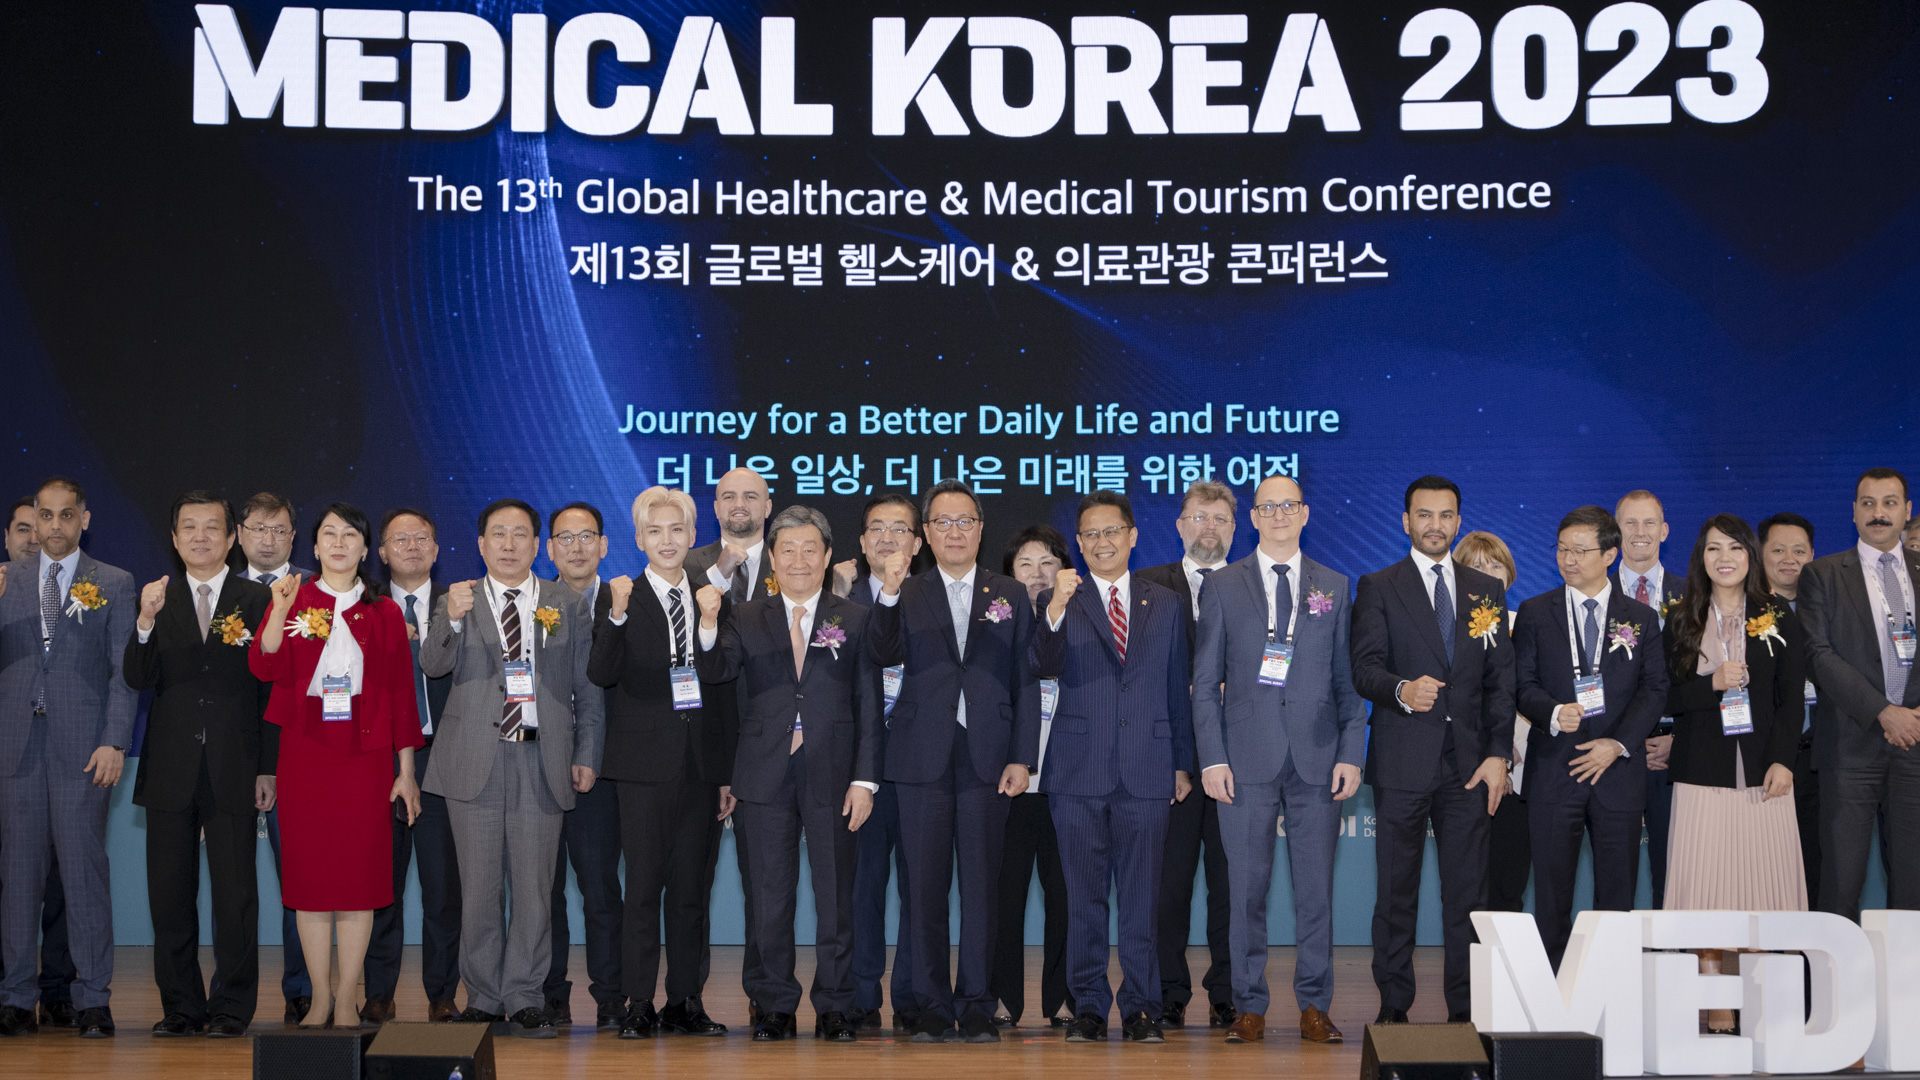 ‘더 나은 일상, 더 나은 미래를 위한 여정’ 「메디컬 코리아(Medical Korea) 2023」 사진29